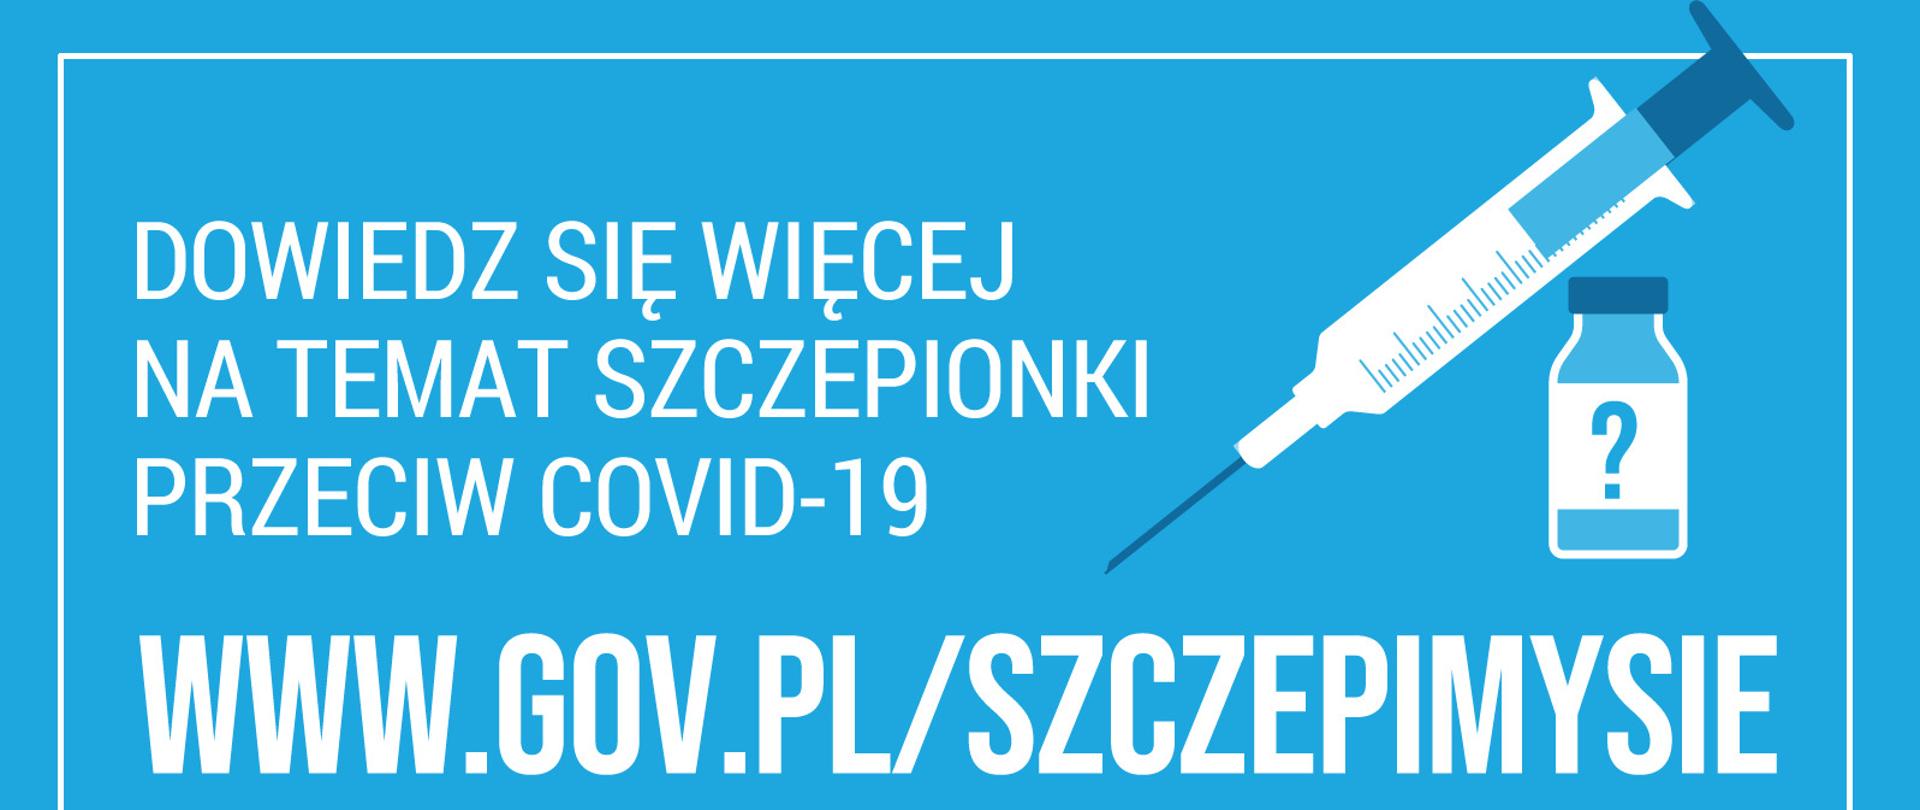 Dowiedz się więcej na www.gov.pl/szczepimysie